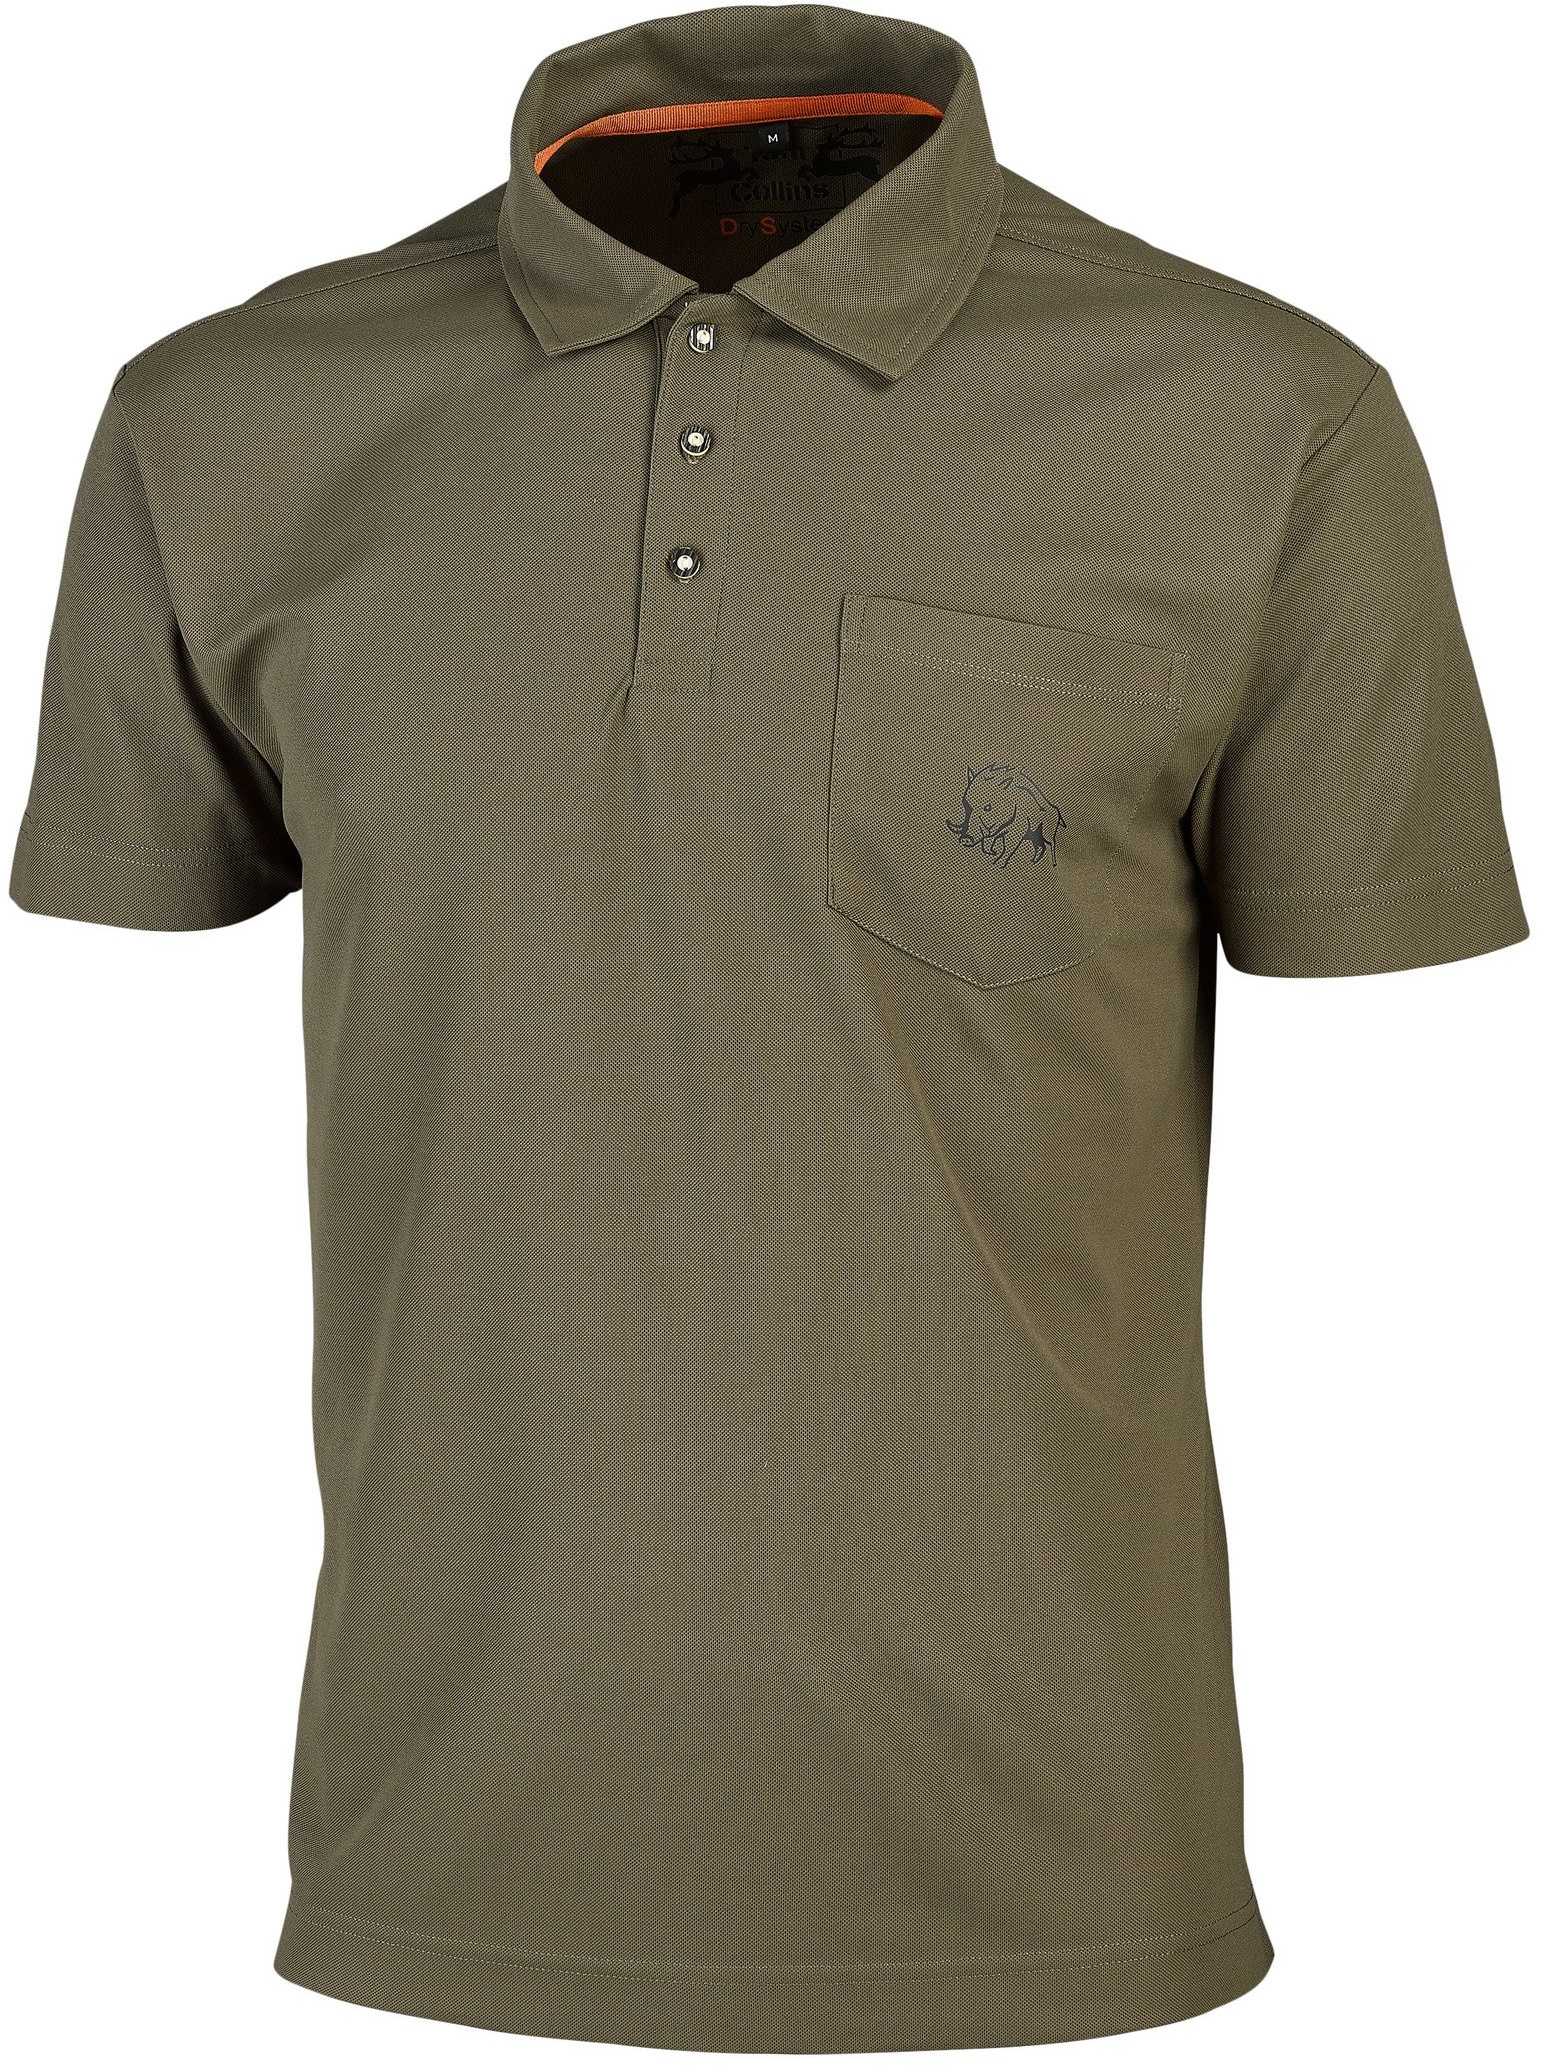 Tom Collins Herren-Funktions-Poloshirt, dunkelgrün, XL